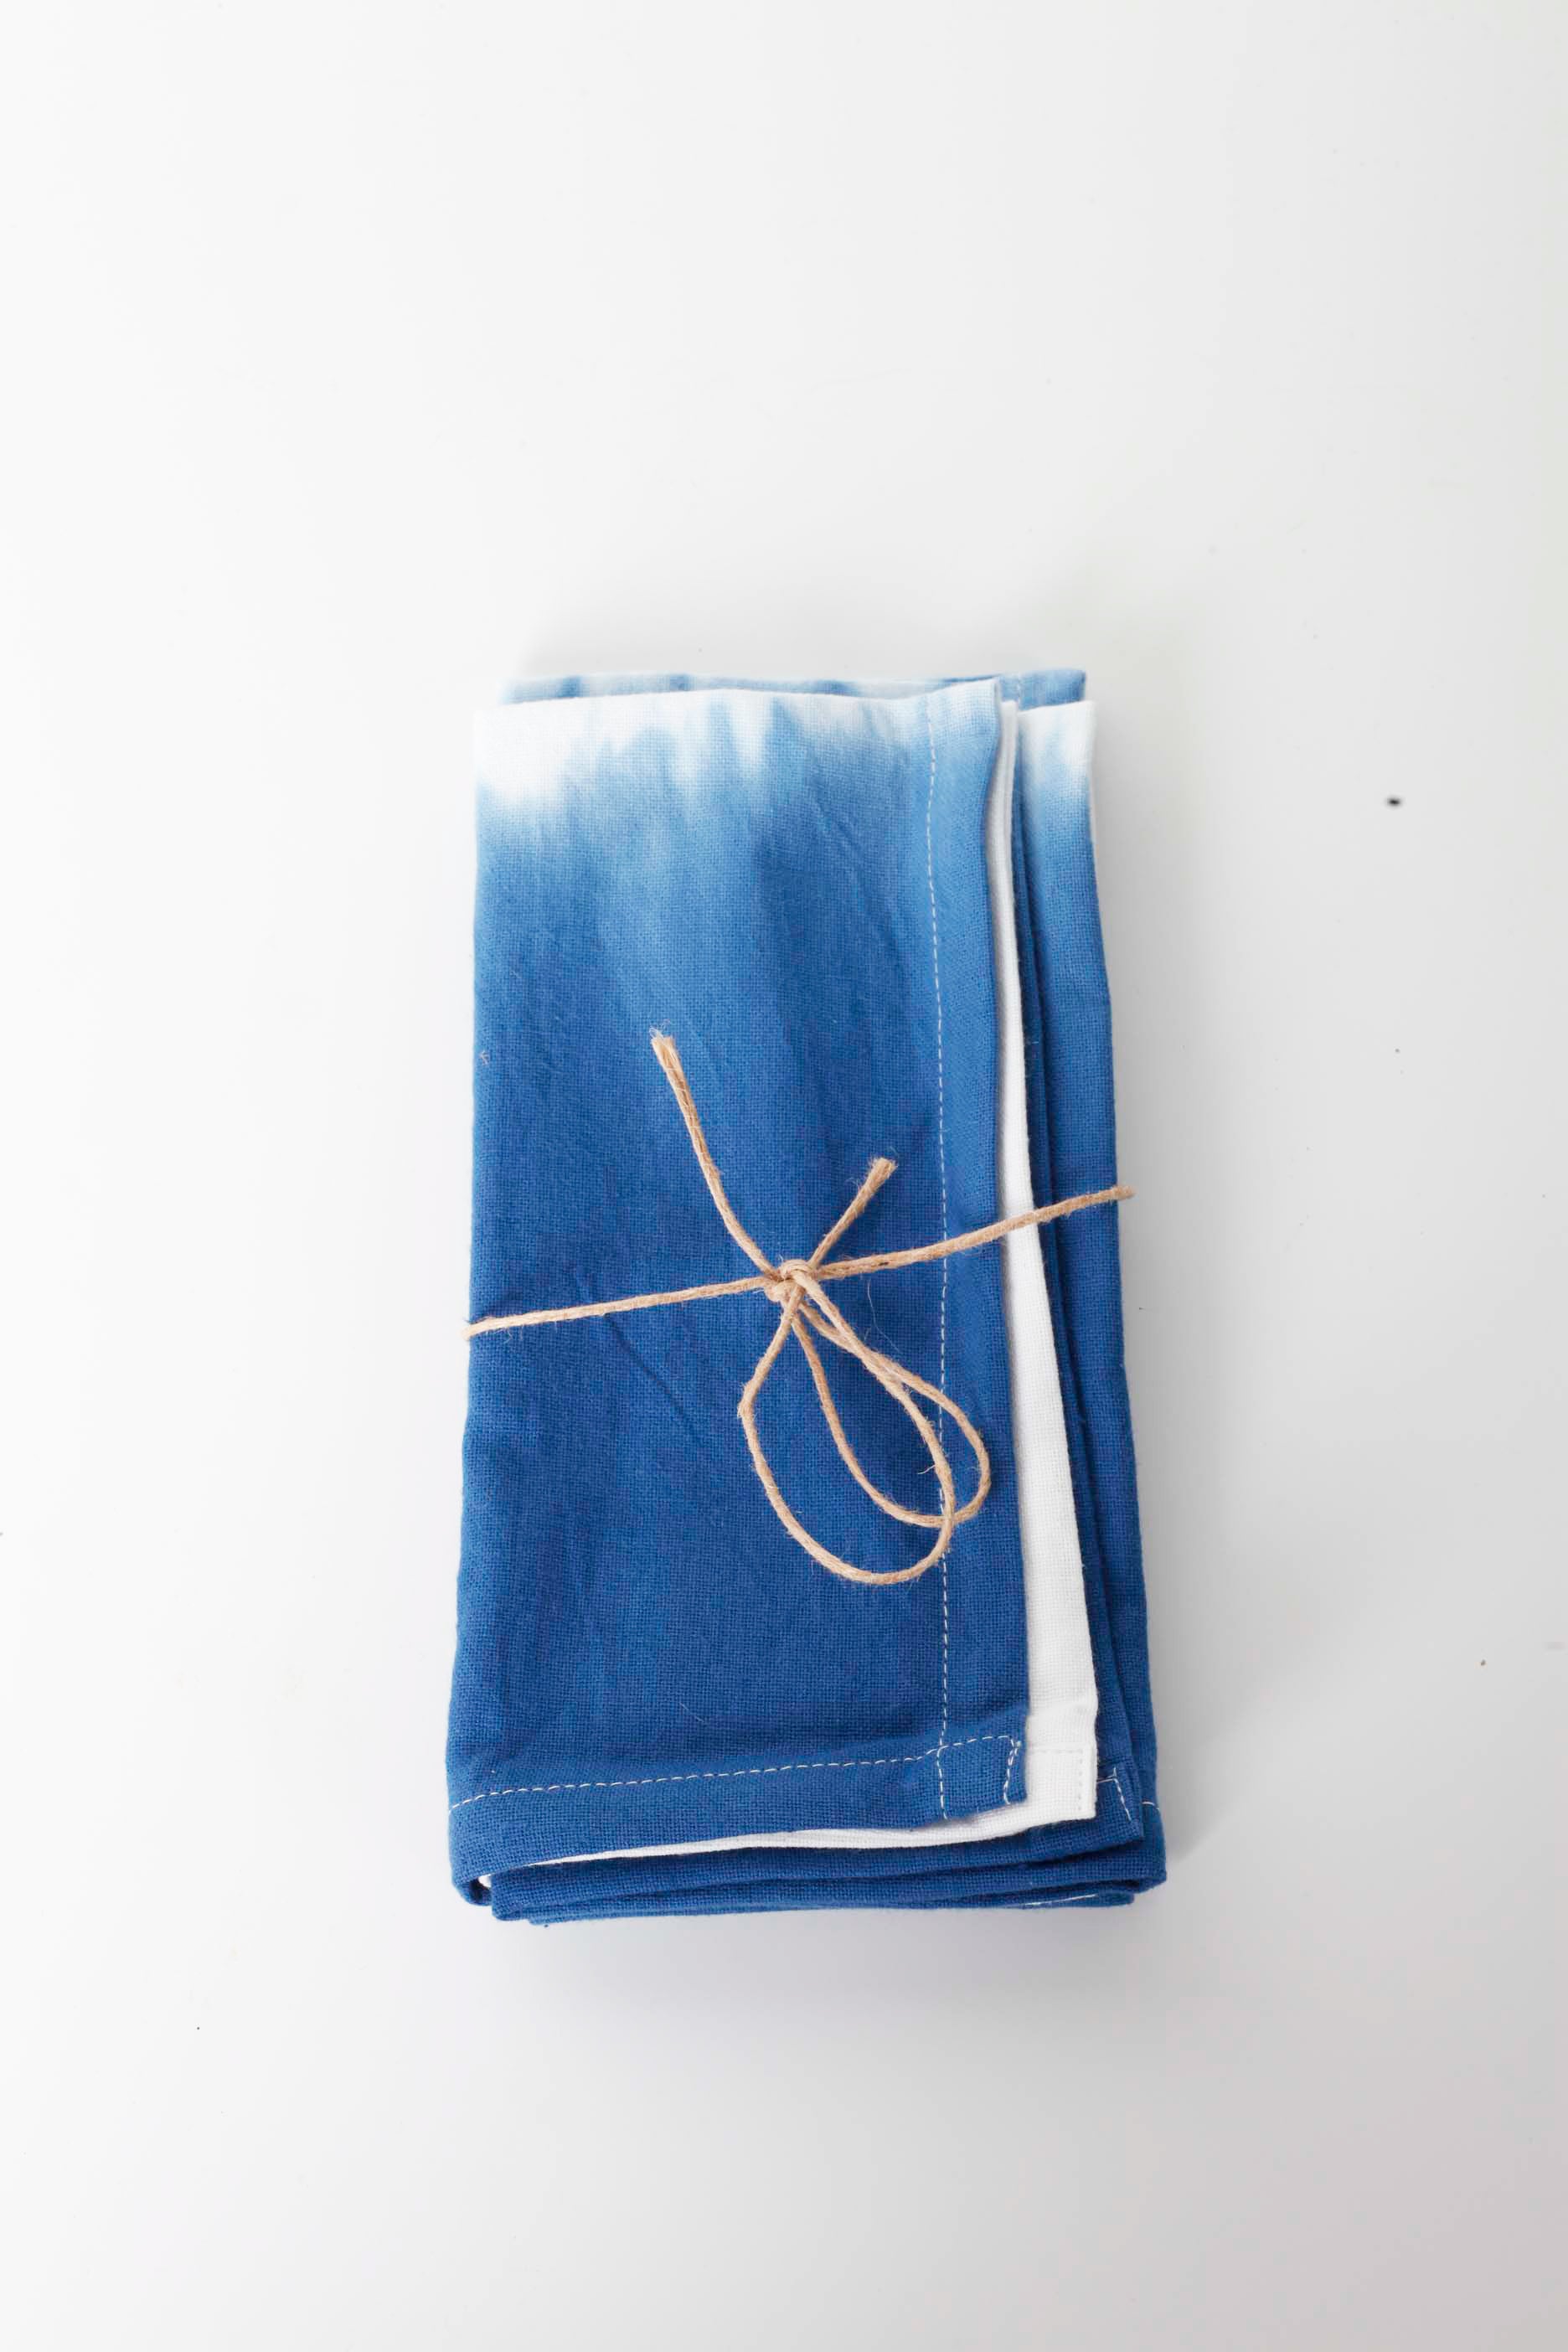 Blue & White Tie Dye Napkins